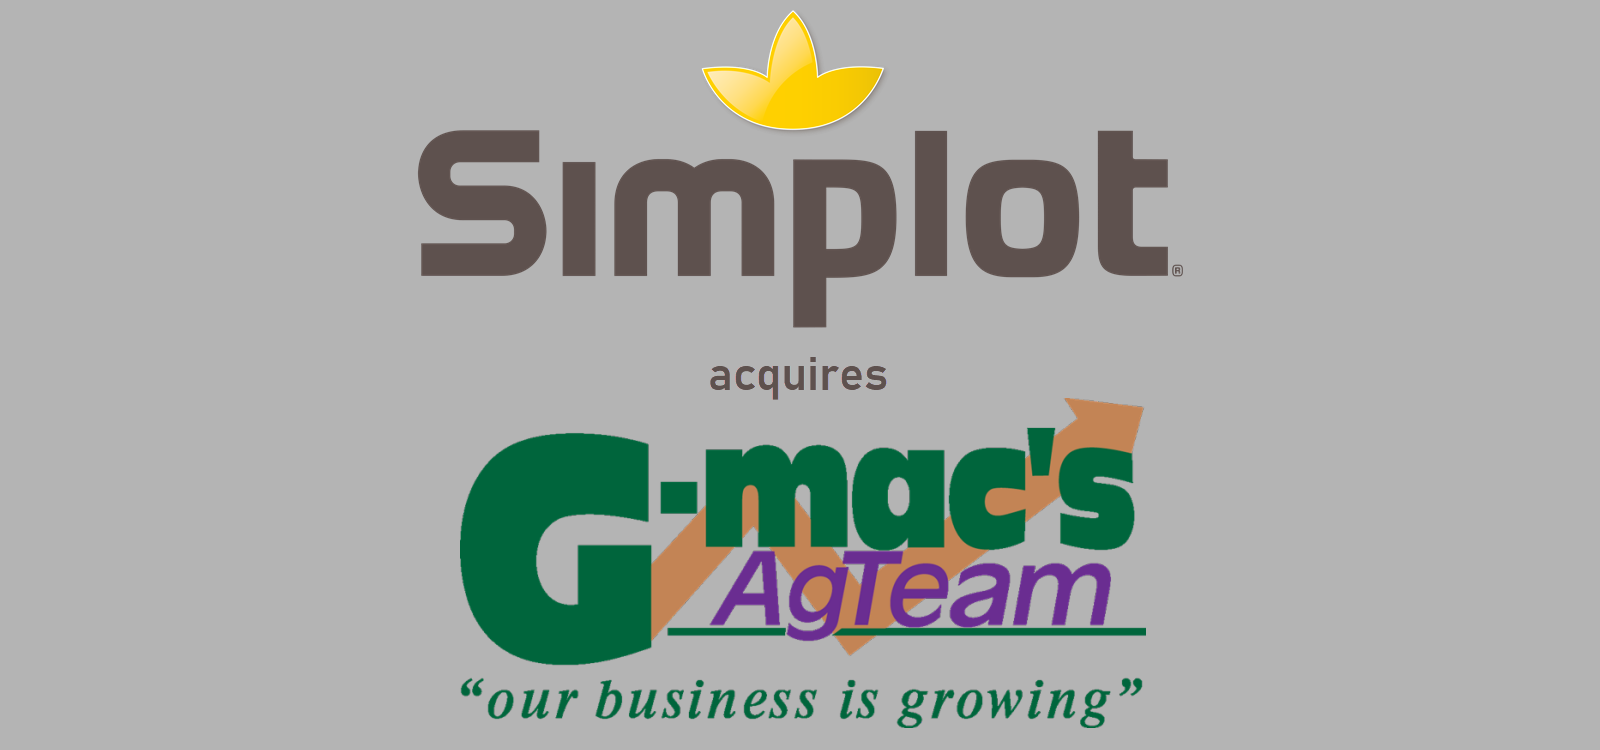 J. R. Simplot acquires G-Mac Ag Team